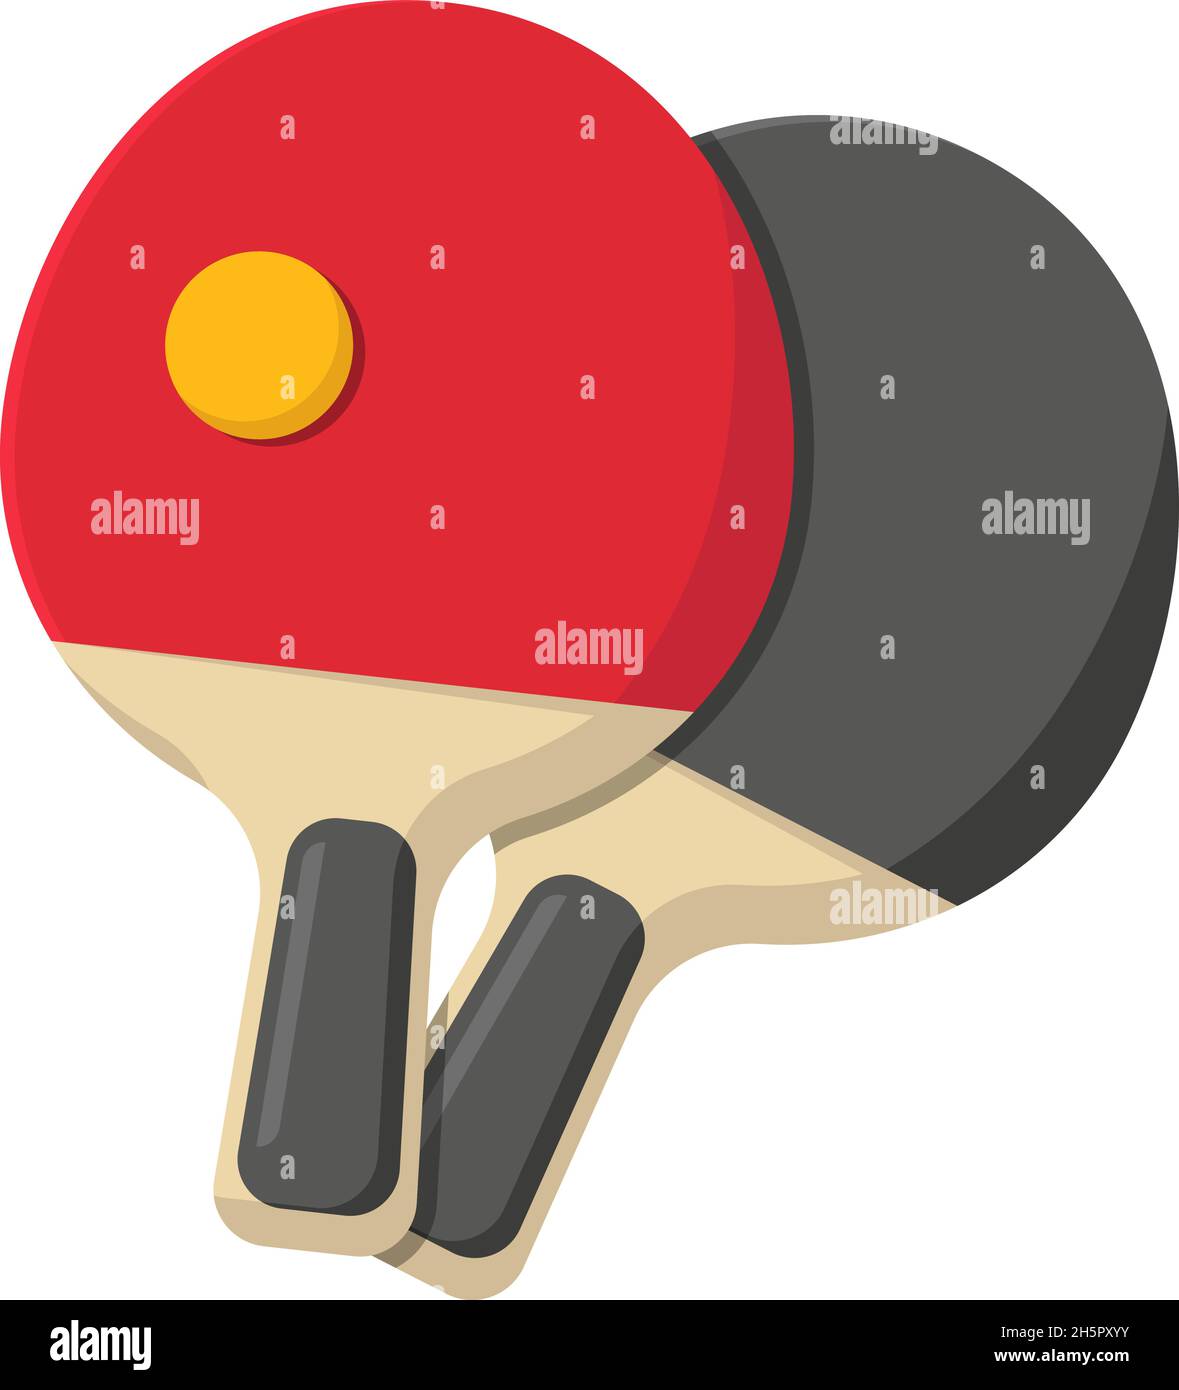 Raquettes Et Balles De Ping-pong, équipement De Tennis De Table En Haut Et  En Perspective